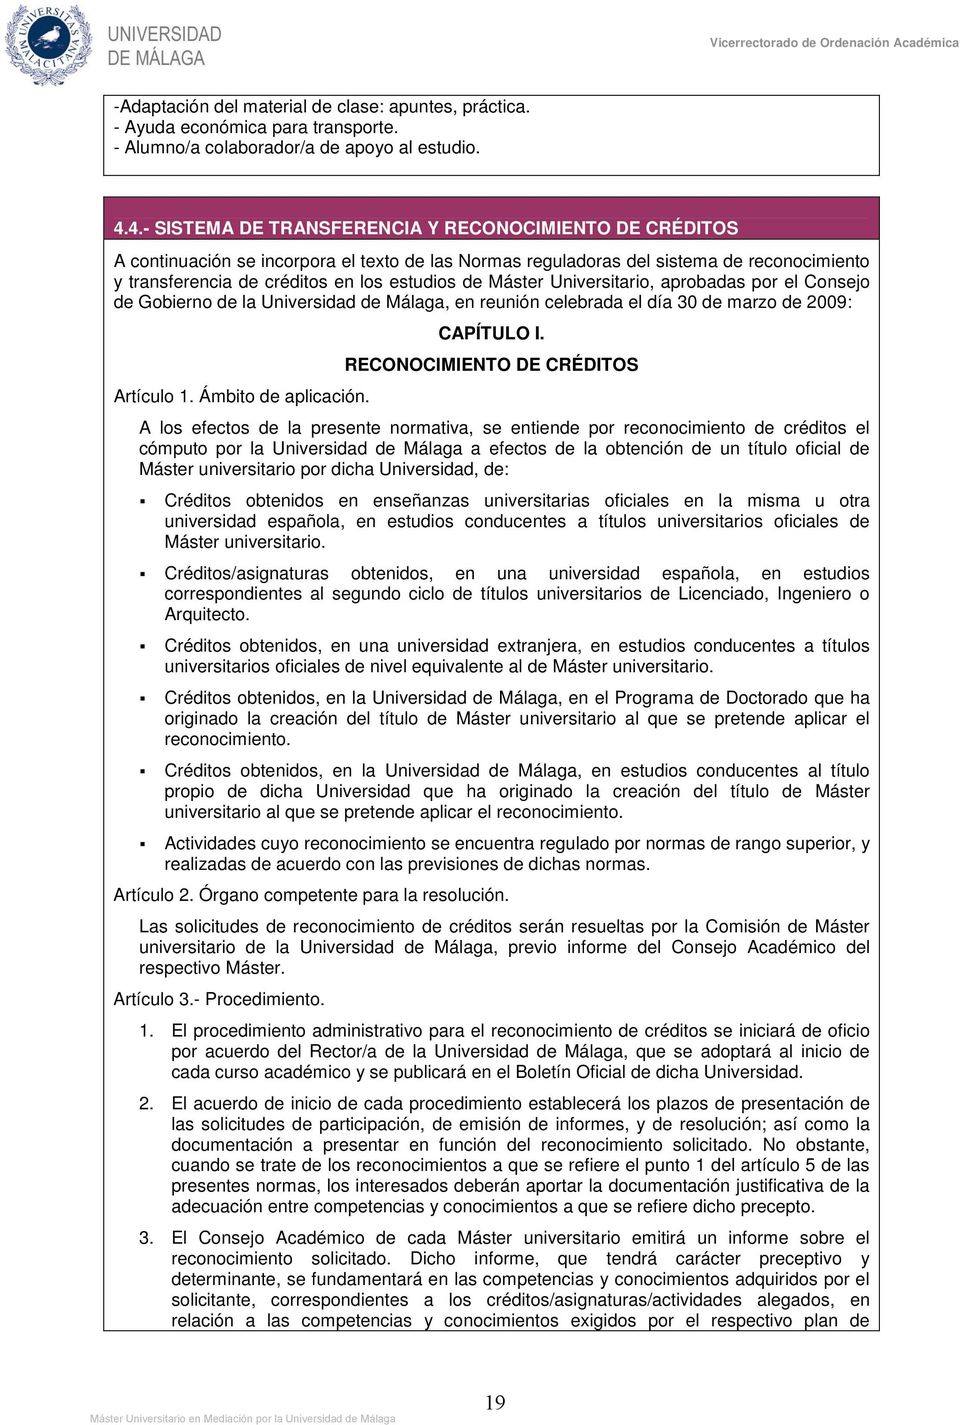 Máster Universitario, aprobadas por el Consejo de Gobierno de la Universidad de Málaga, en reunión celebrada el día 30 de marzo de 2009: Artículo 1. Ámbito de aplicación. CAPÍTULO I.